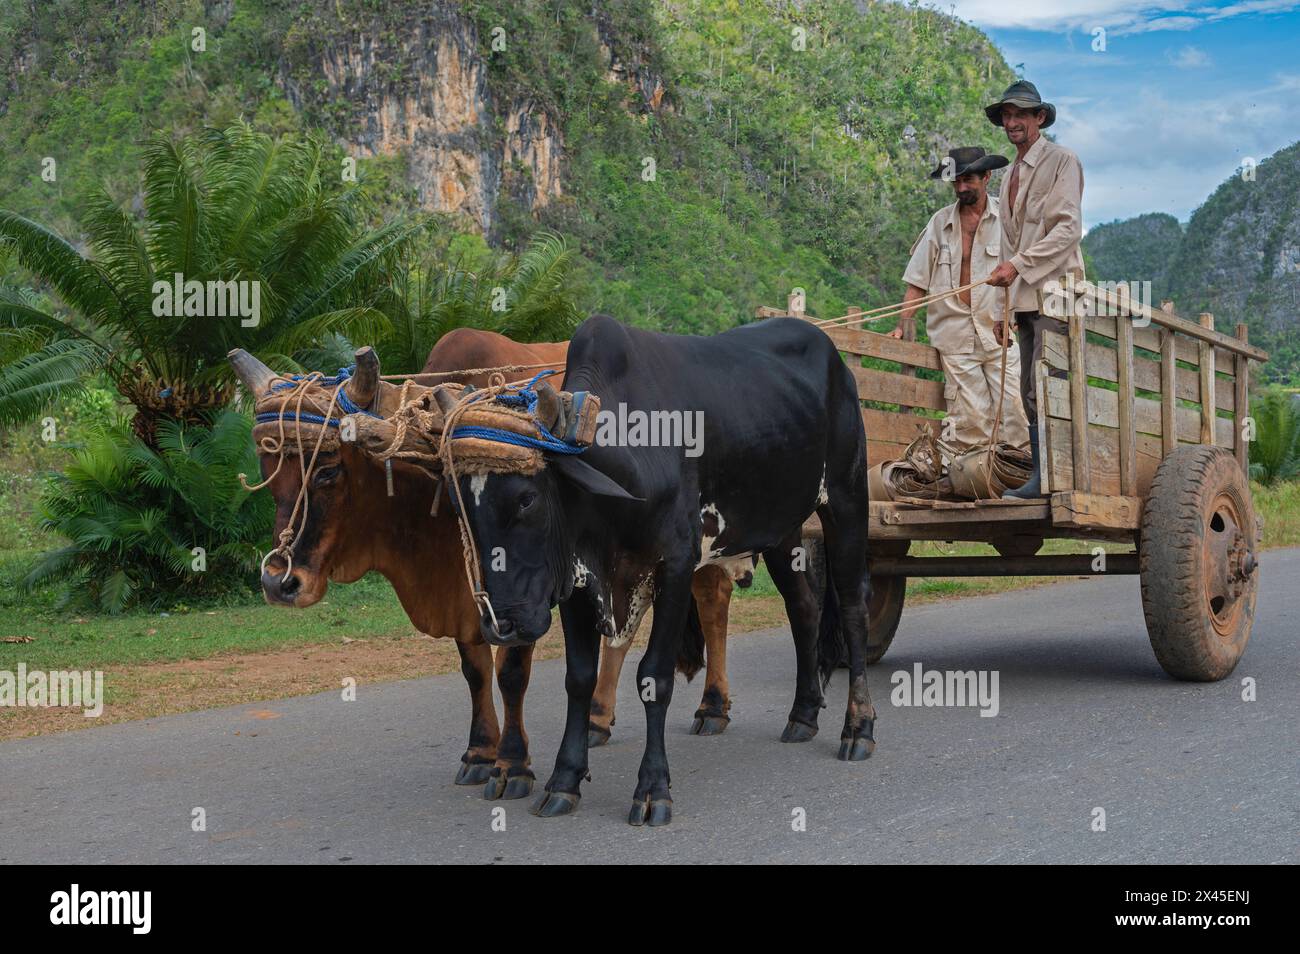 Une paire de bœufs tirant une charrette et deux fermiers le long de la route avec une toile de fond du paysage karstique, près de Vinales, Cuba Banque D'Images